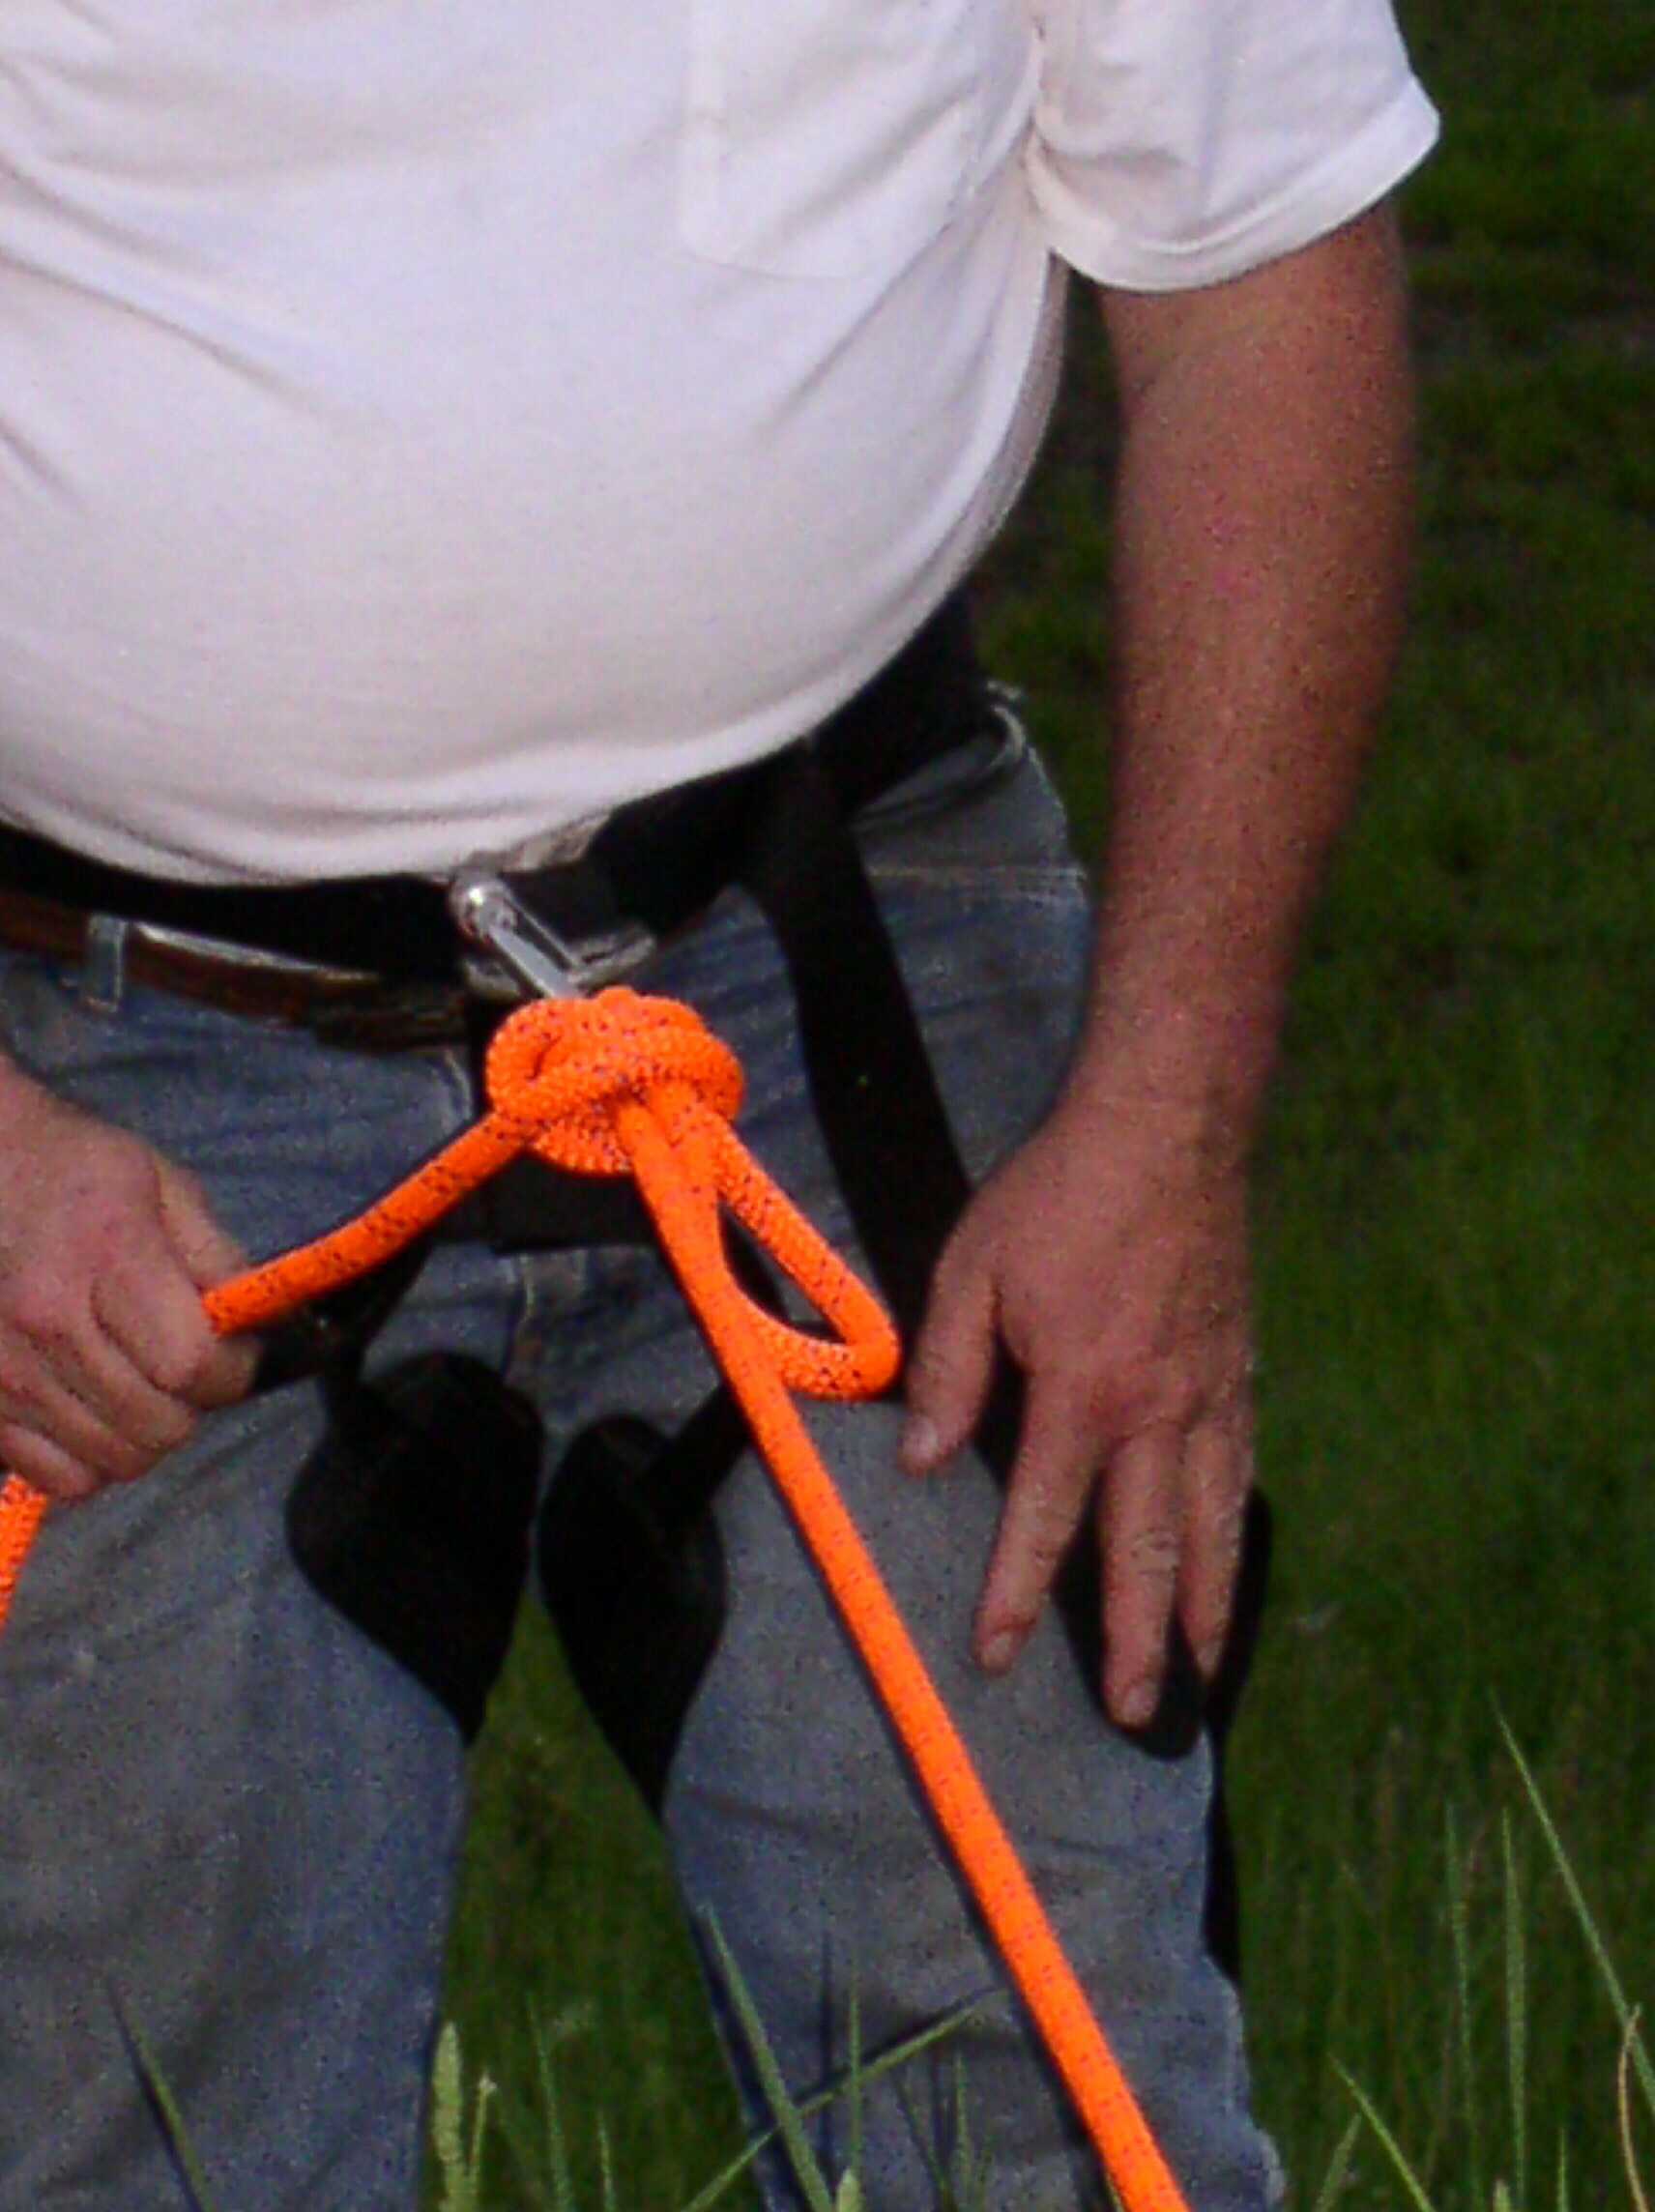 05-13-04  Training - Rope Rescue